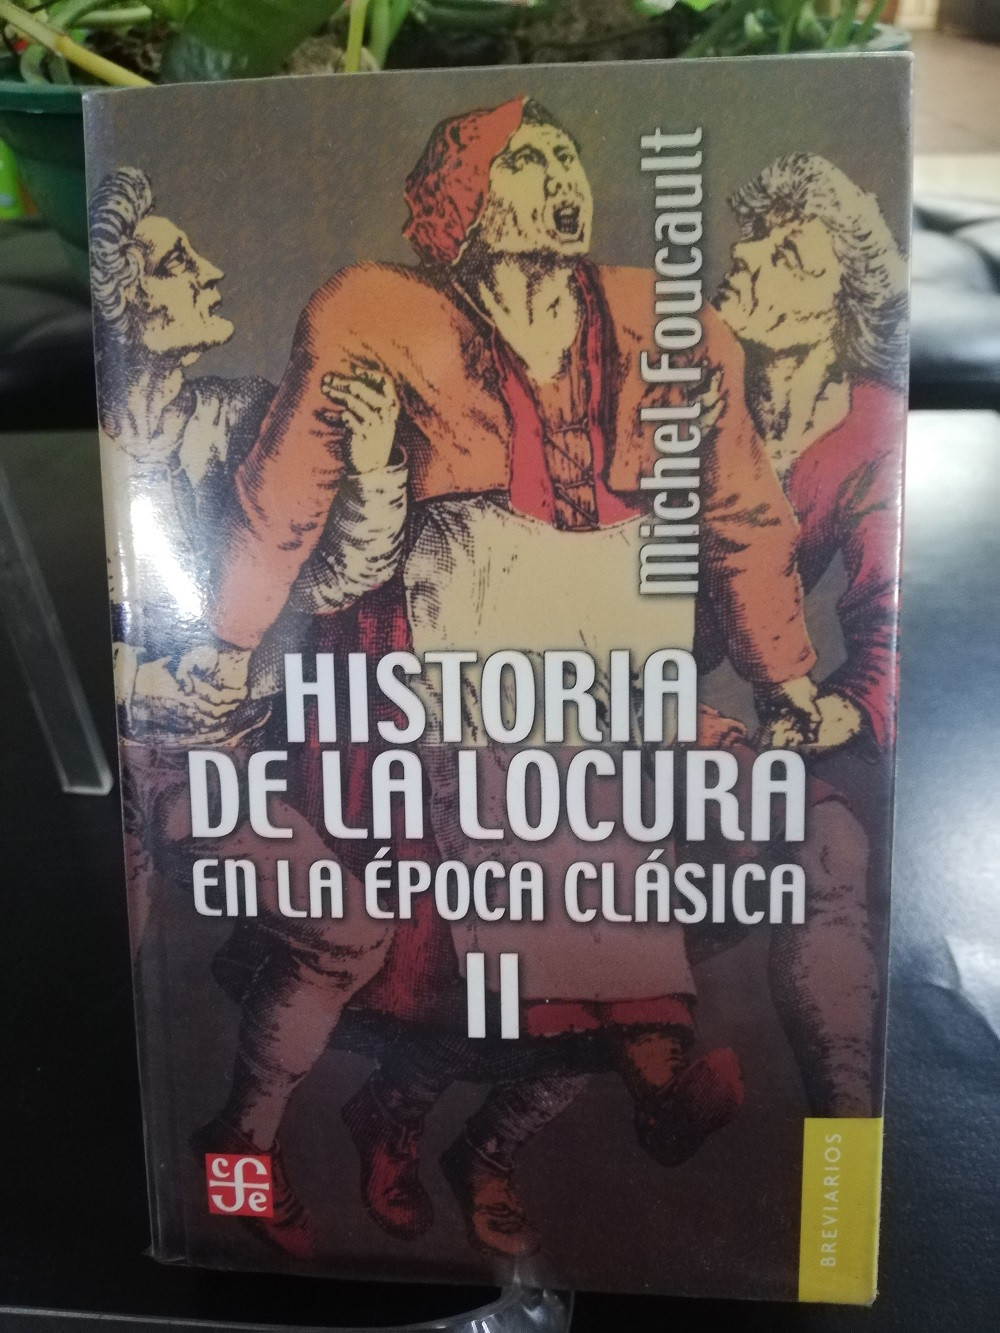 Imagen HISTORIA DE LA LOCURA VOL. 2 - MICHEL FOUCAULT 1